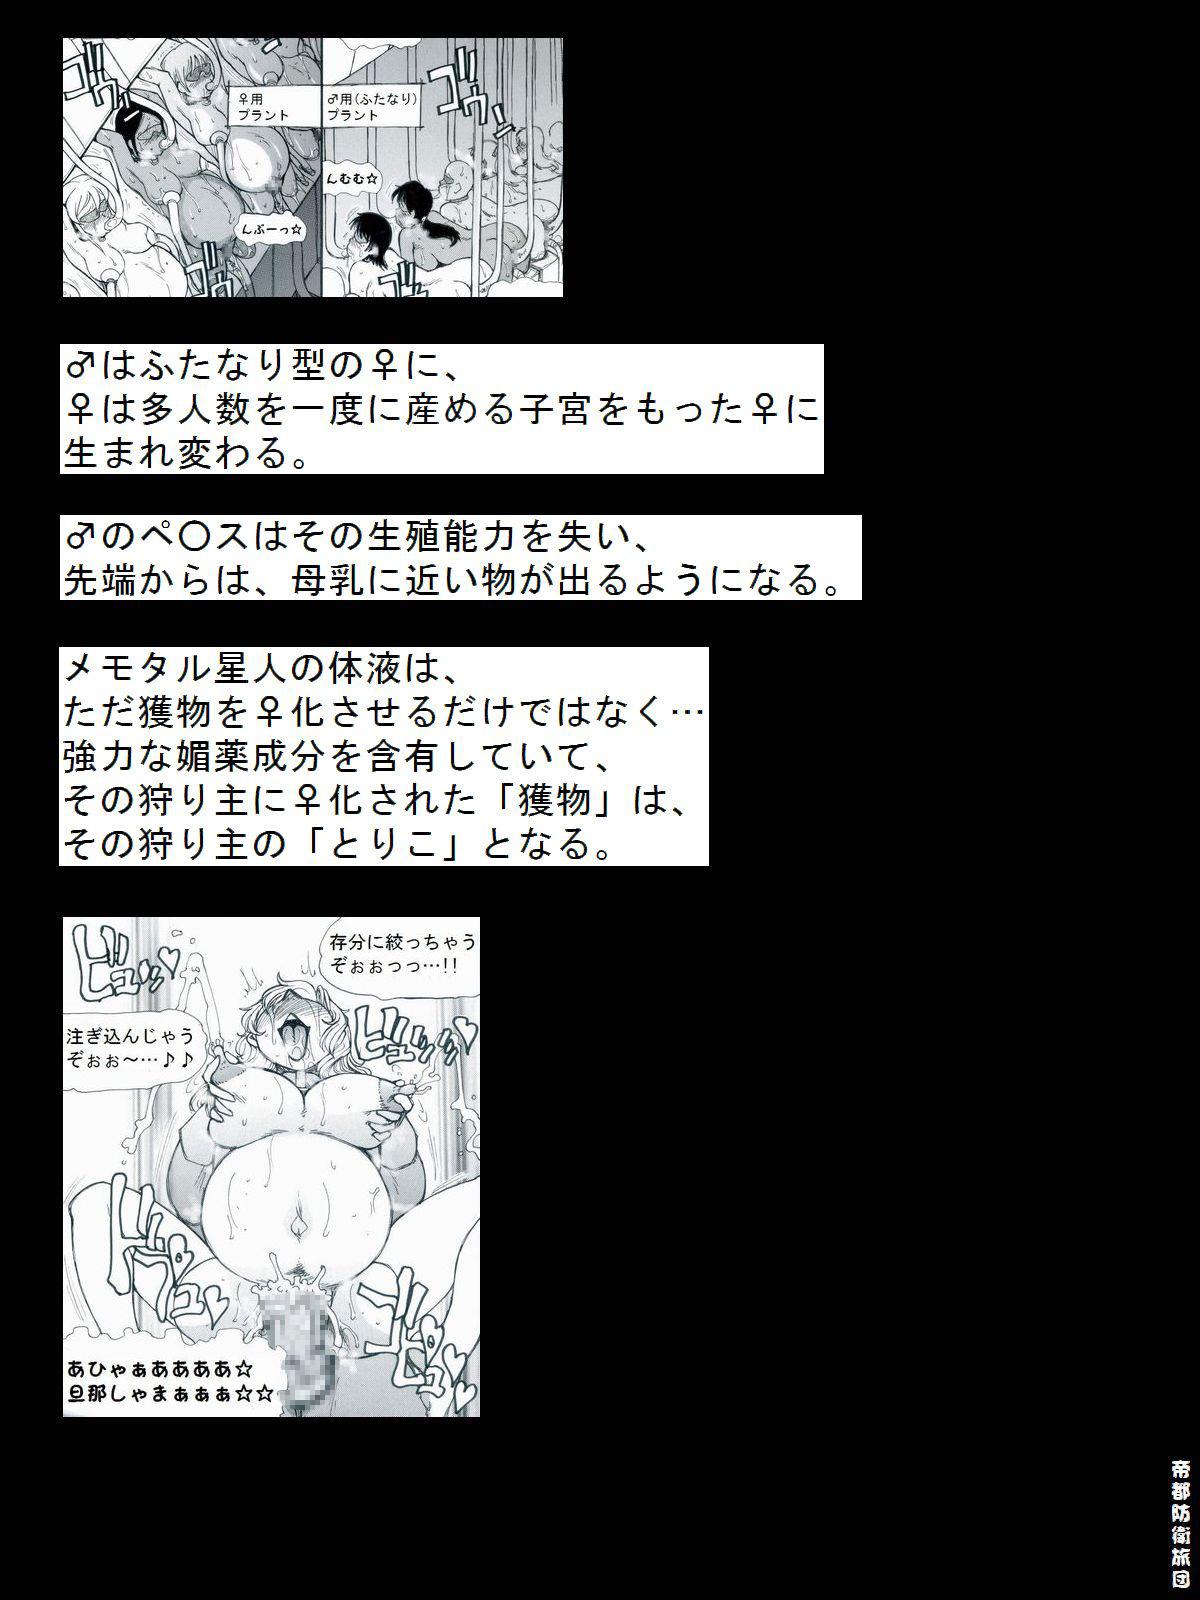 [Teito Bouei Ryodan] RTKBOOK Ver.9.3 M○X Ijiri (3) “PANPAN - MAN” 27